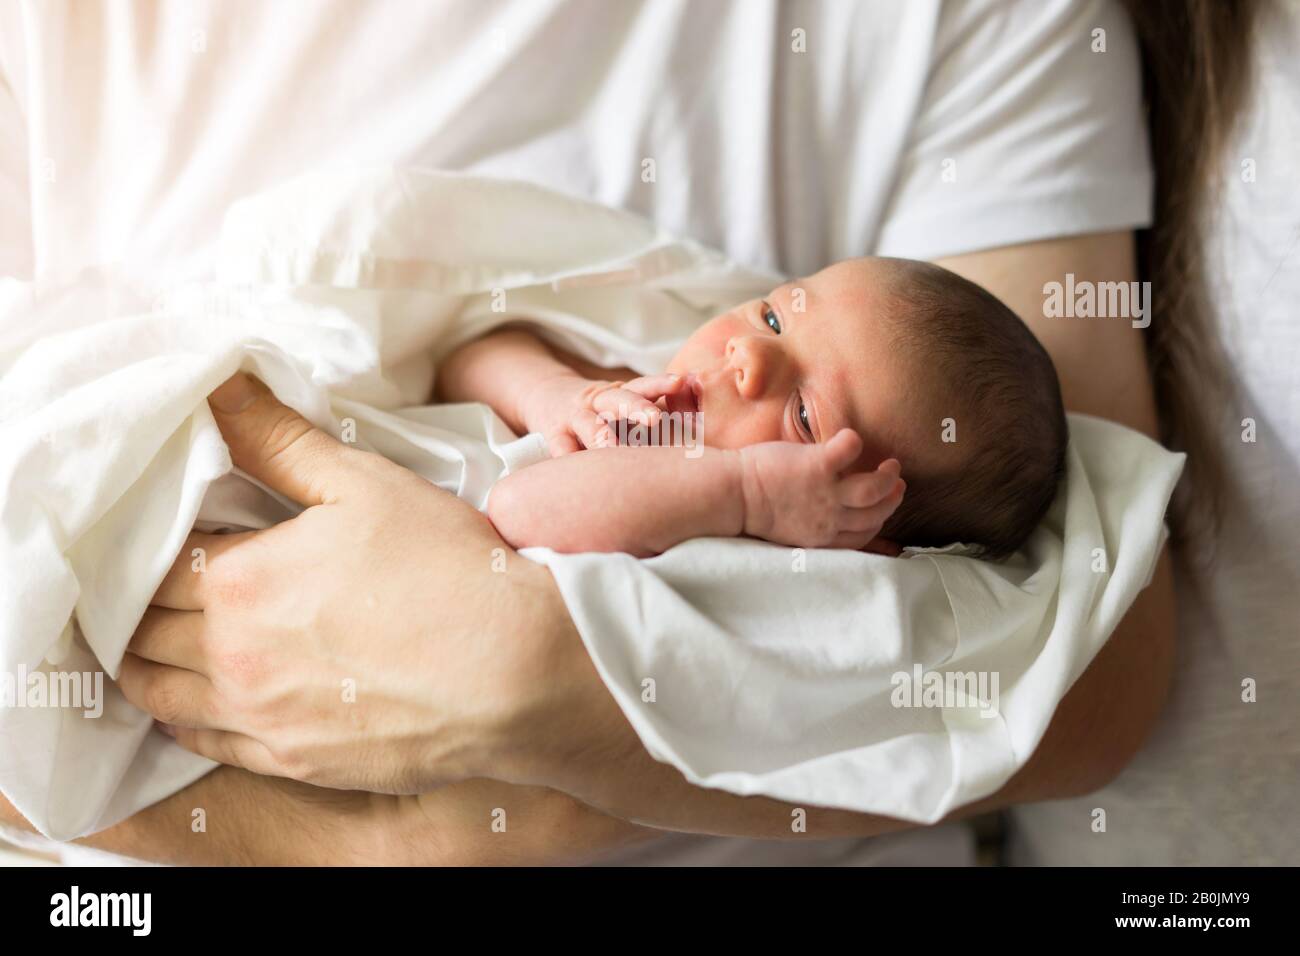 El Padre mantiene desnudo hijo recién nacido en sus manos en un pañal blanco Foto de stock